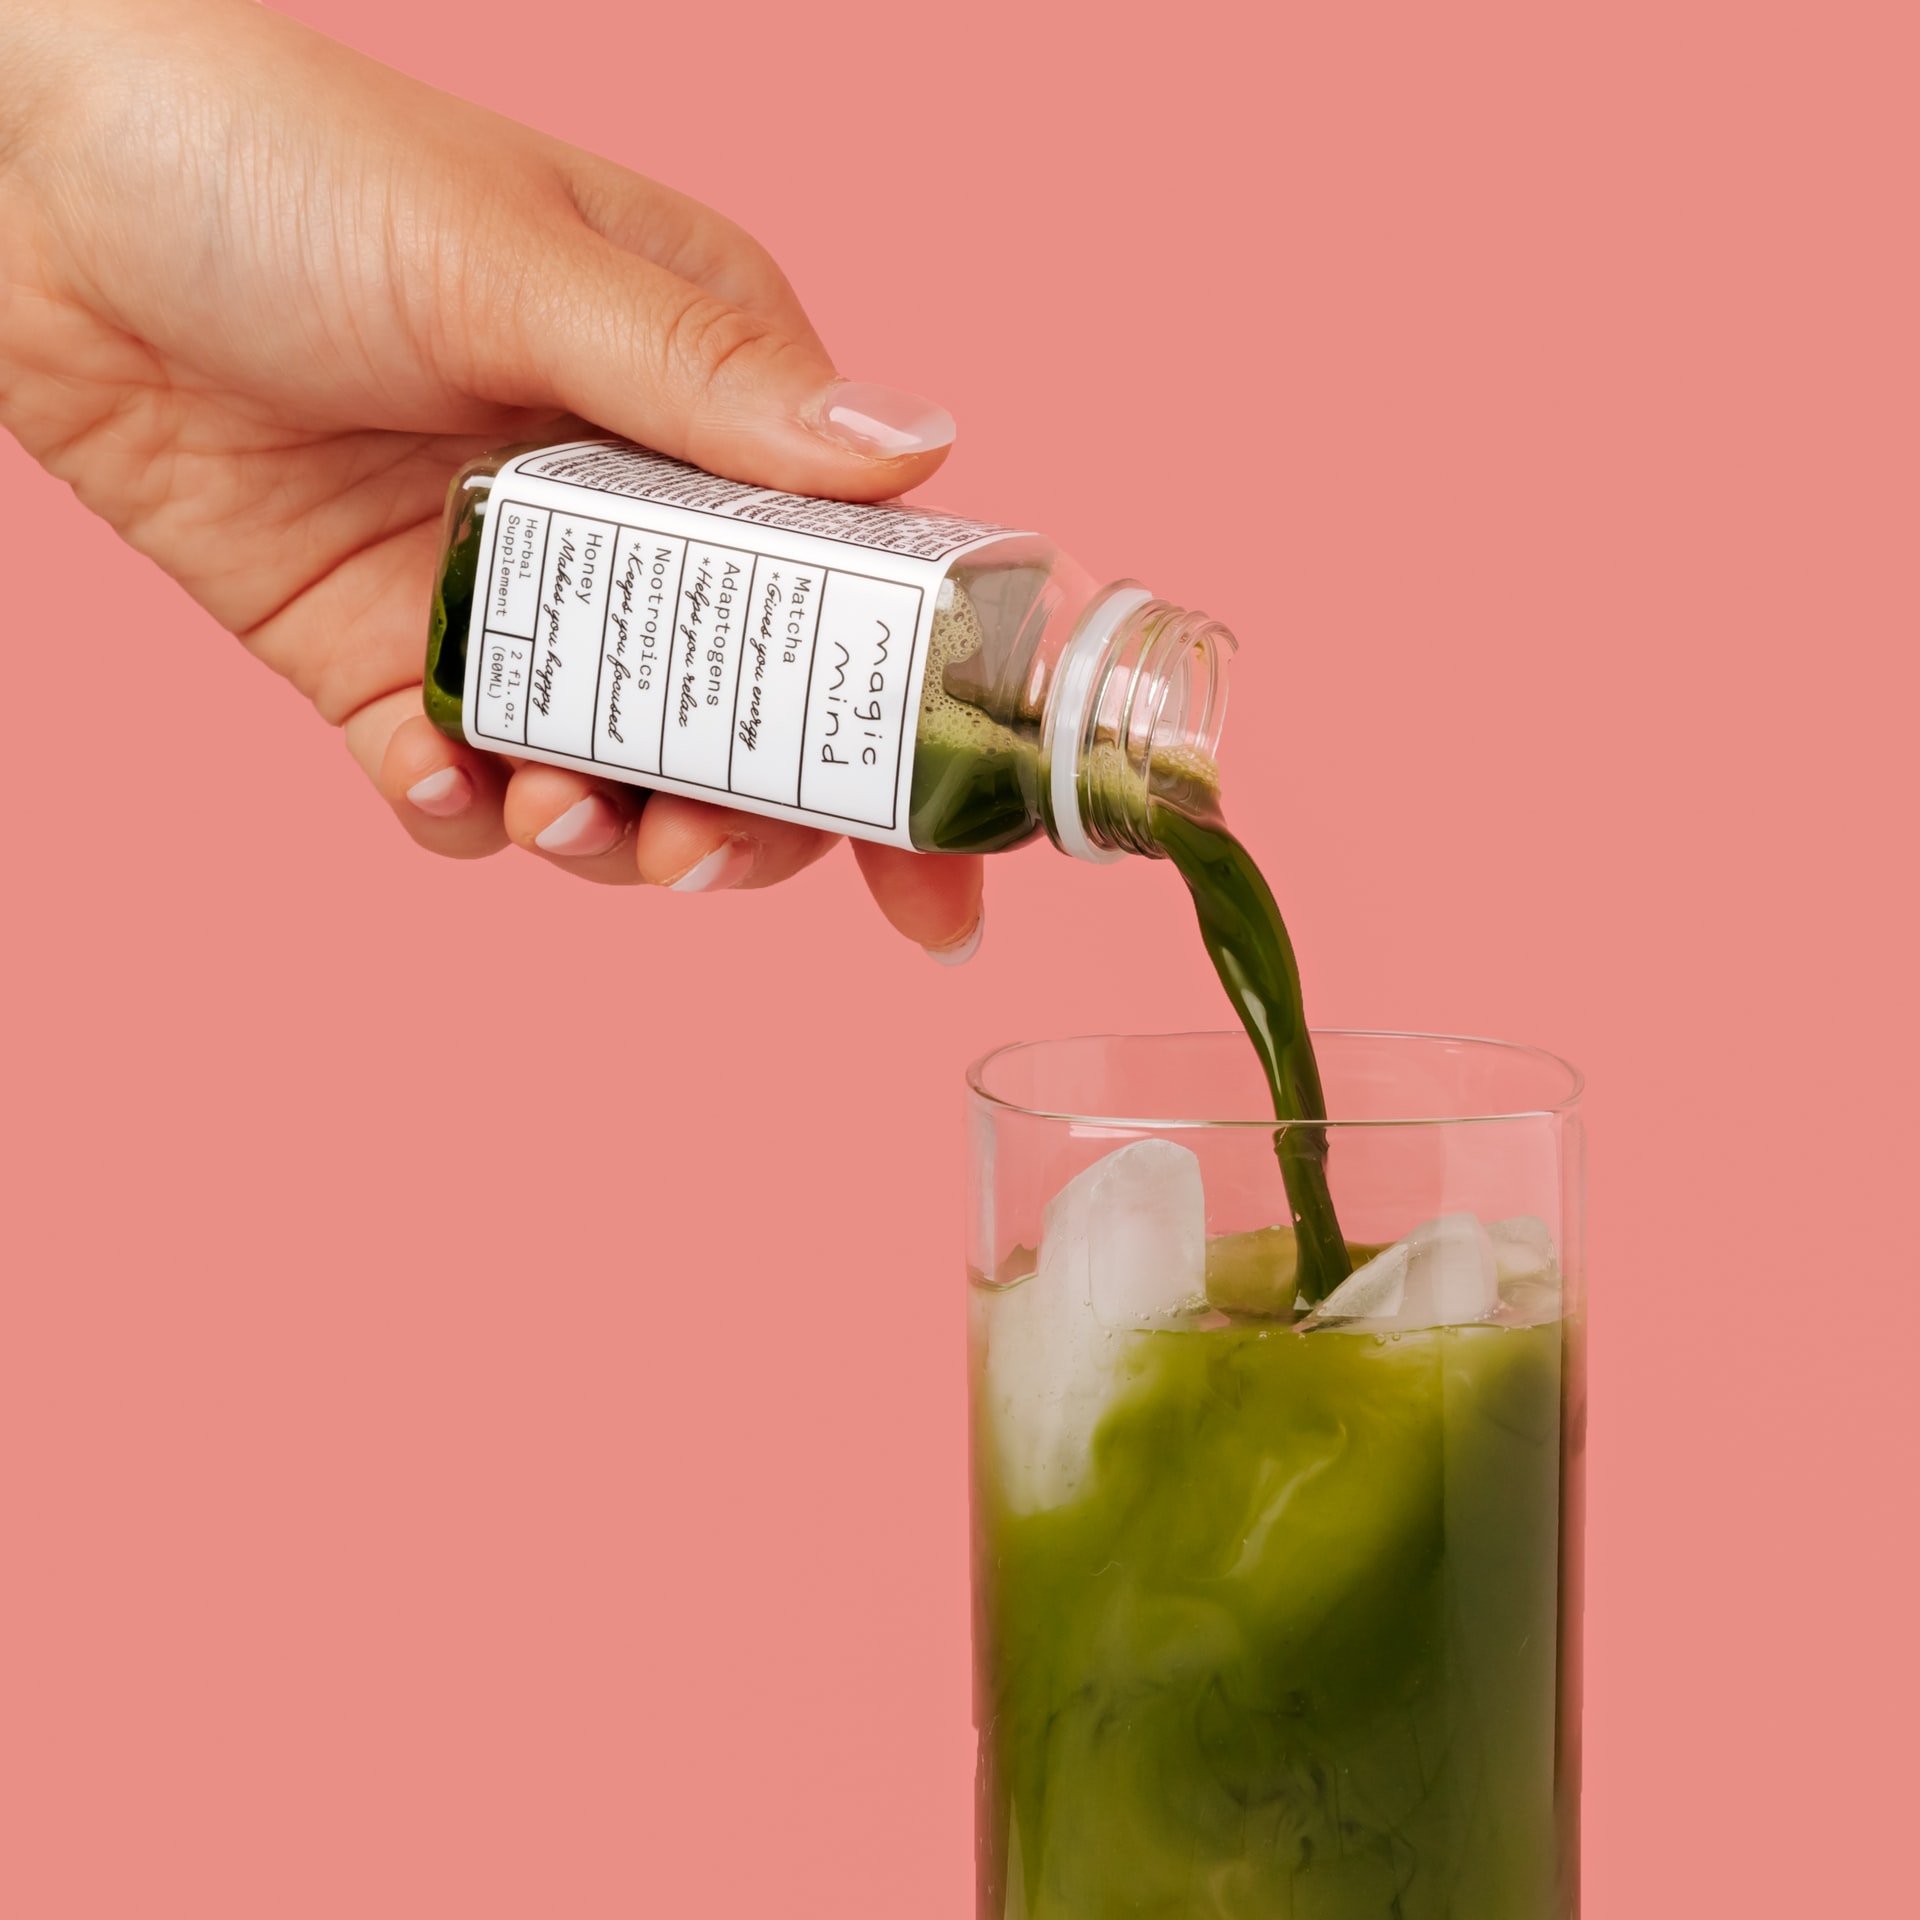 Supplemental green juice